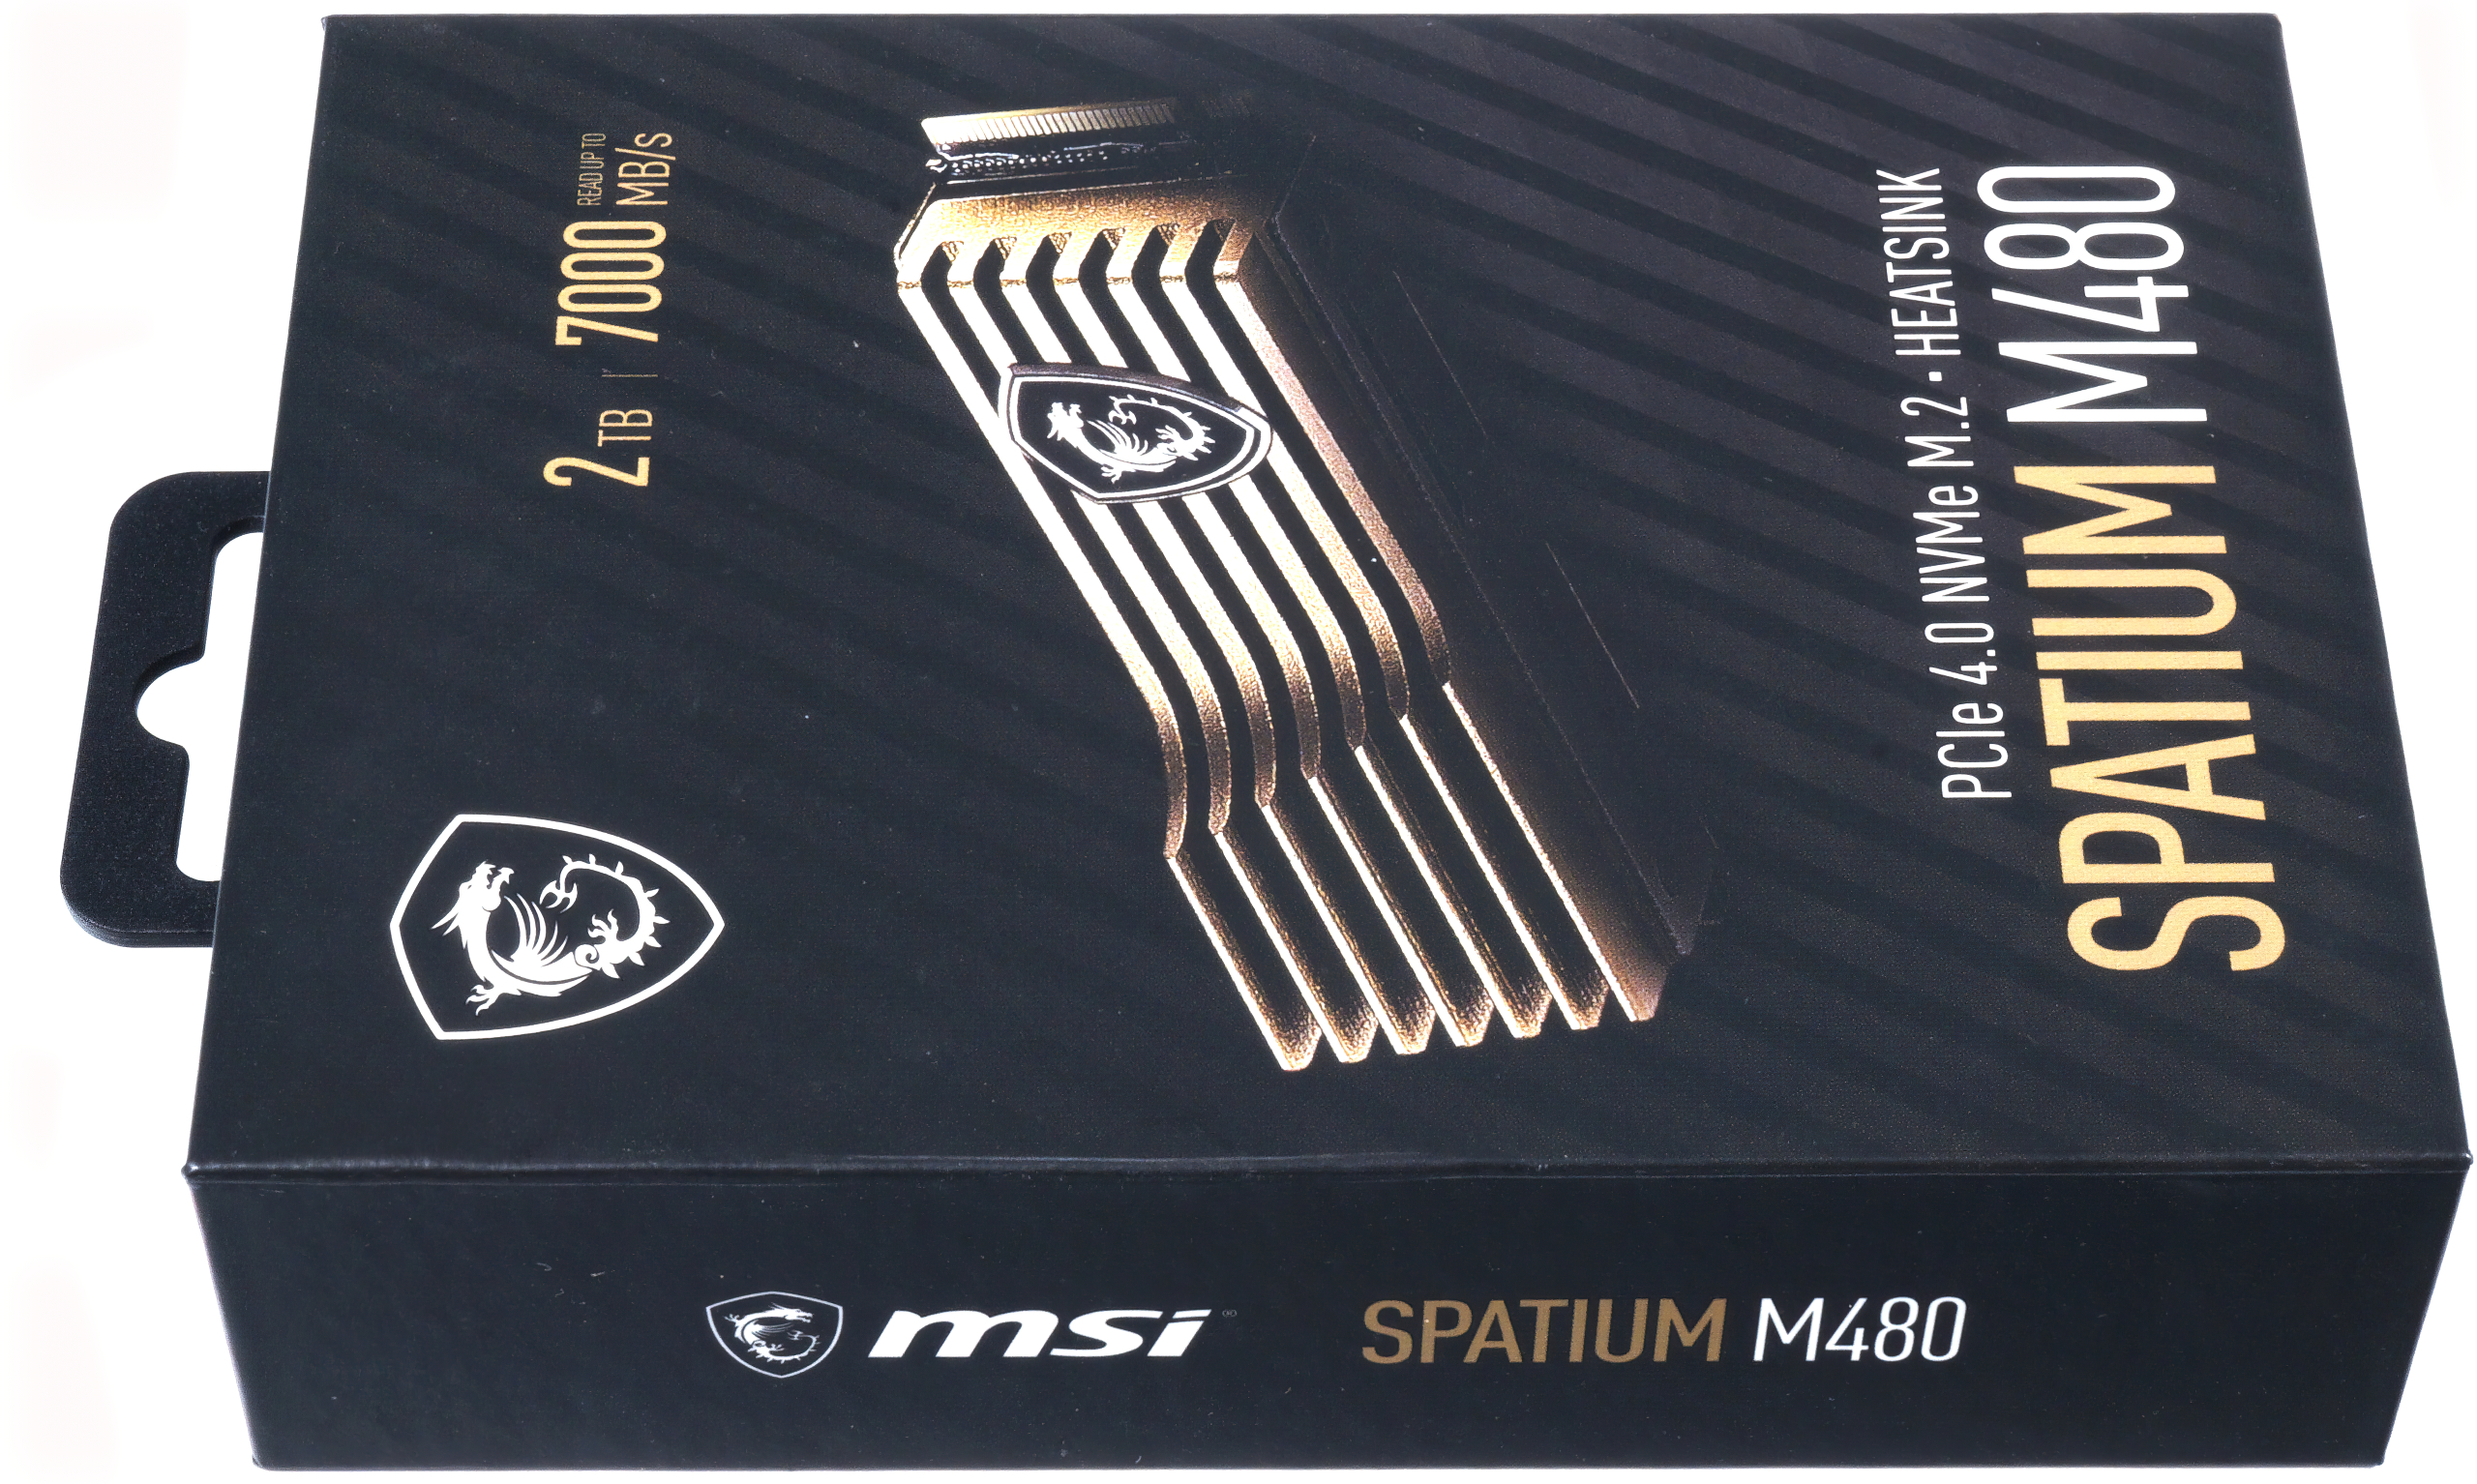 SPATIUM M480 PCIe 4.0 NVMe M.2 PLAY